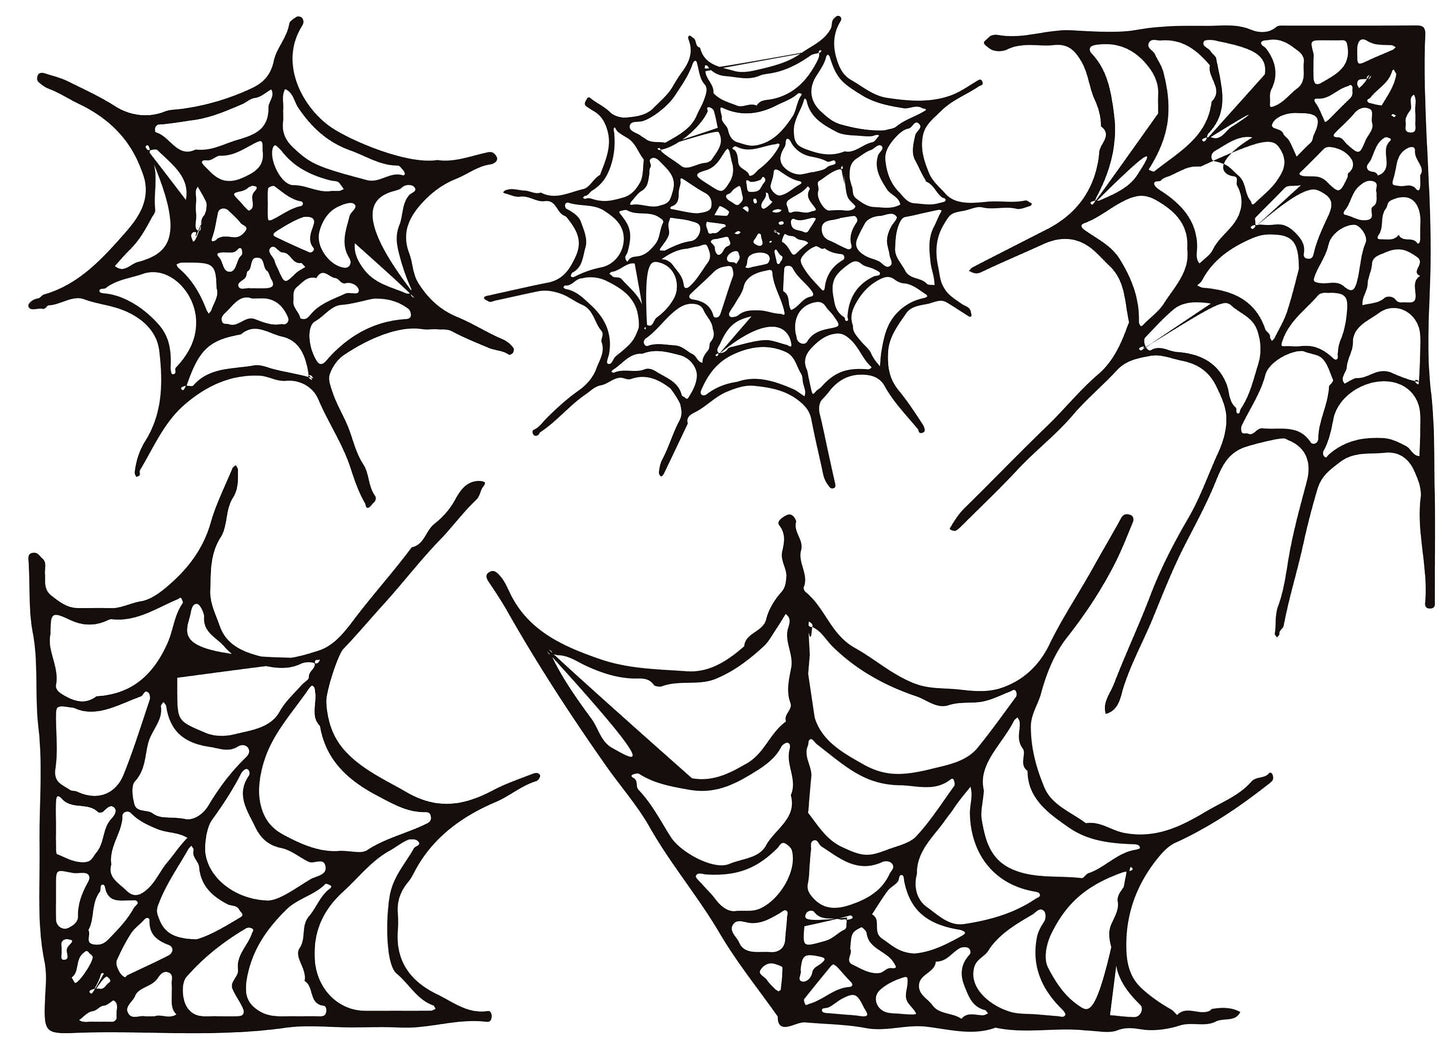 Spider Webs Halloween Window Stickers For Kids Cjhildren Home, Halloween Decorations, Spiderweb Stickers, Spider Web Decals